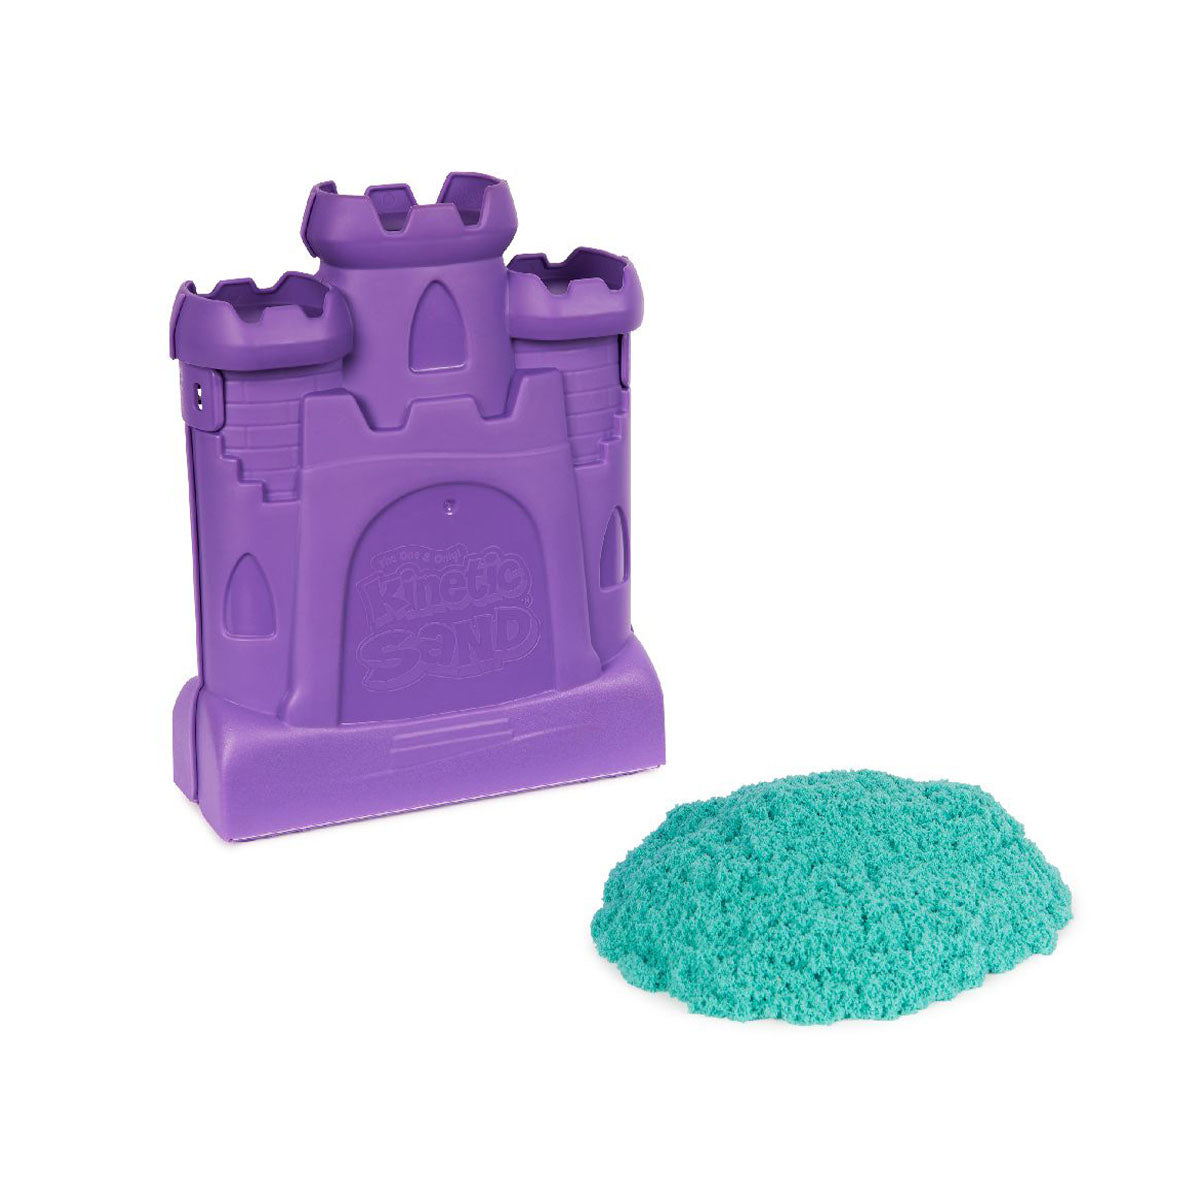 Met deze castle case speelset van het merk Kinetic Sand kan je kindje zelf geweldige zandkastelen vormen. Het is een geweldige set om lekker creatief mee bezig te zijn en de fantasie de vrije loop te laten! Met de unieke Kinetic Sand-formule kun je wat je maar bedenkt gemakkelijk vormgeven en kneden. VanZus